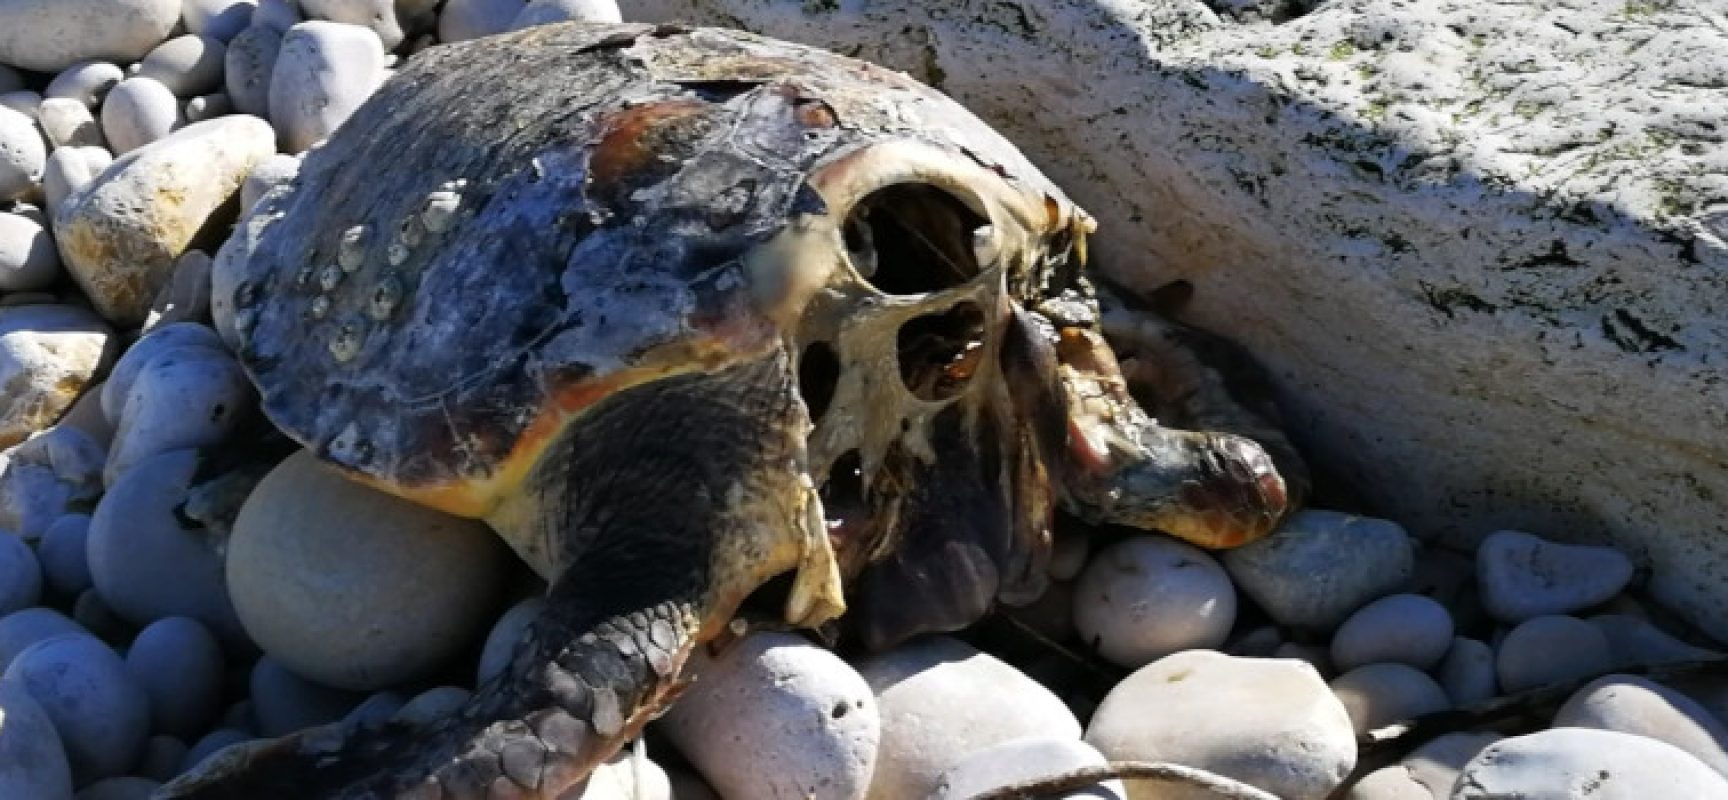 Tartarughe marine decapitate per superstizione, l’appello del WWF: “Chi sa parli!”